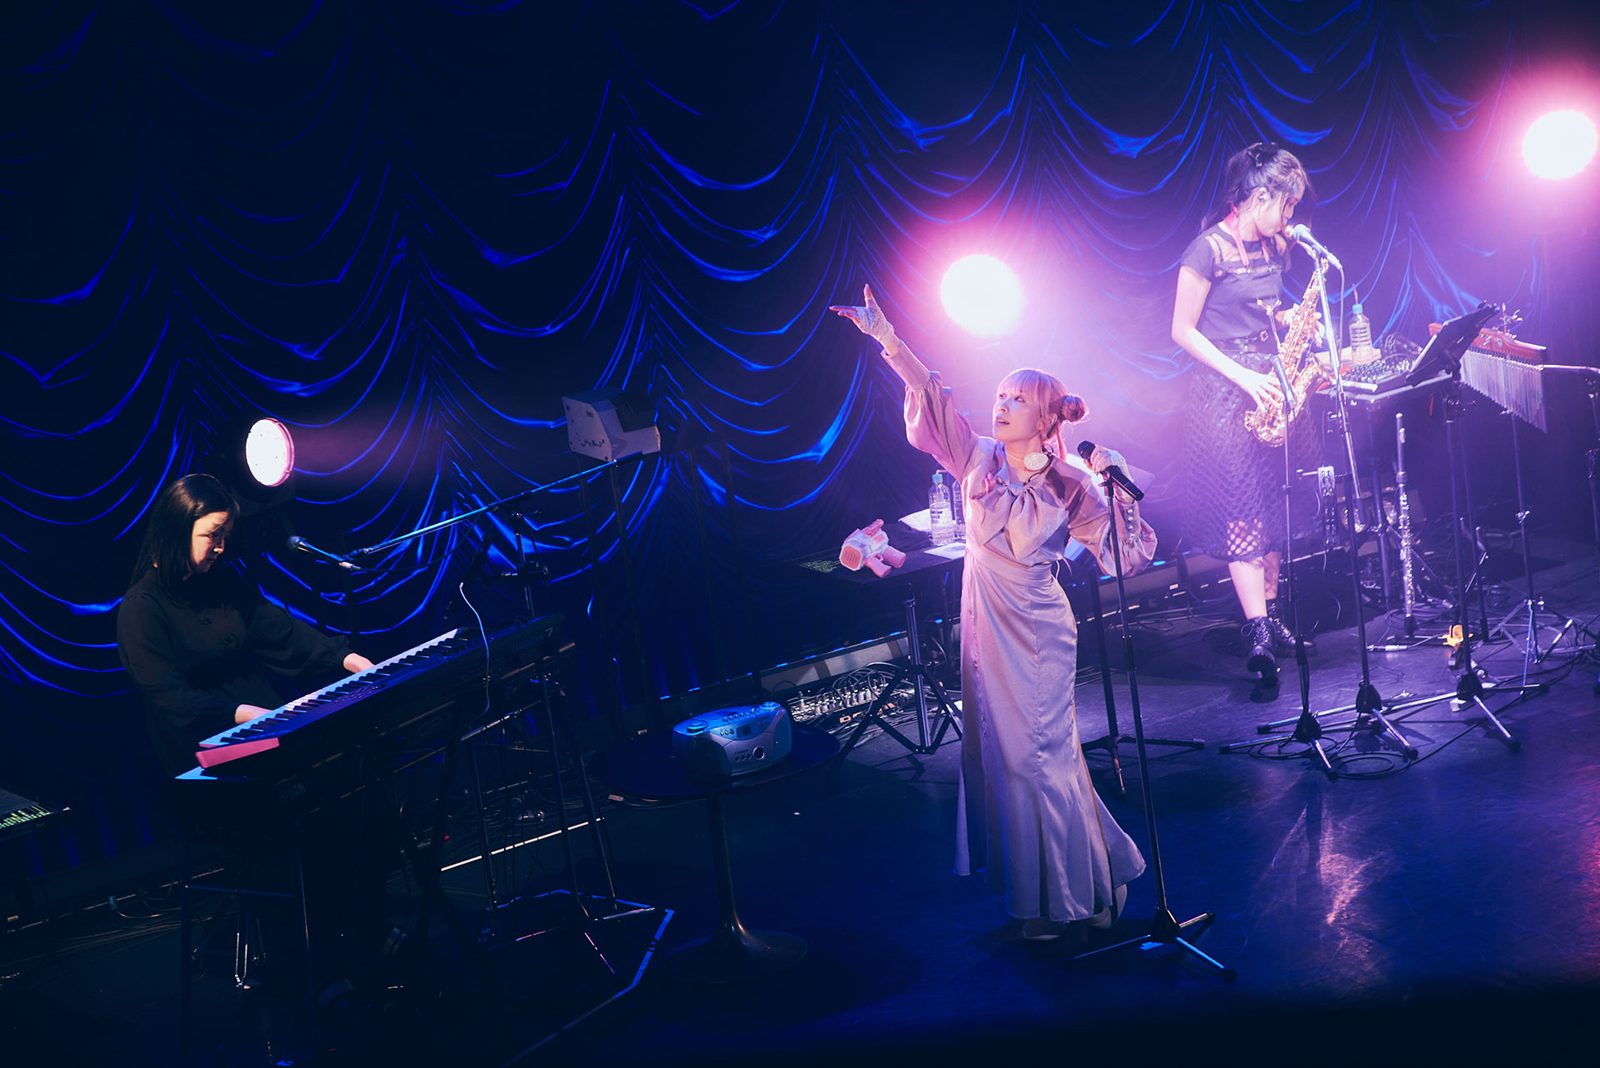 独自の世界観と共に音楽の楽しさを分かち合い、新たな世界へ飛躍するステージに――“降幡 愛 4th Live Tour USAGI”東京公演レポート